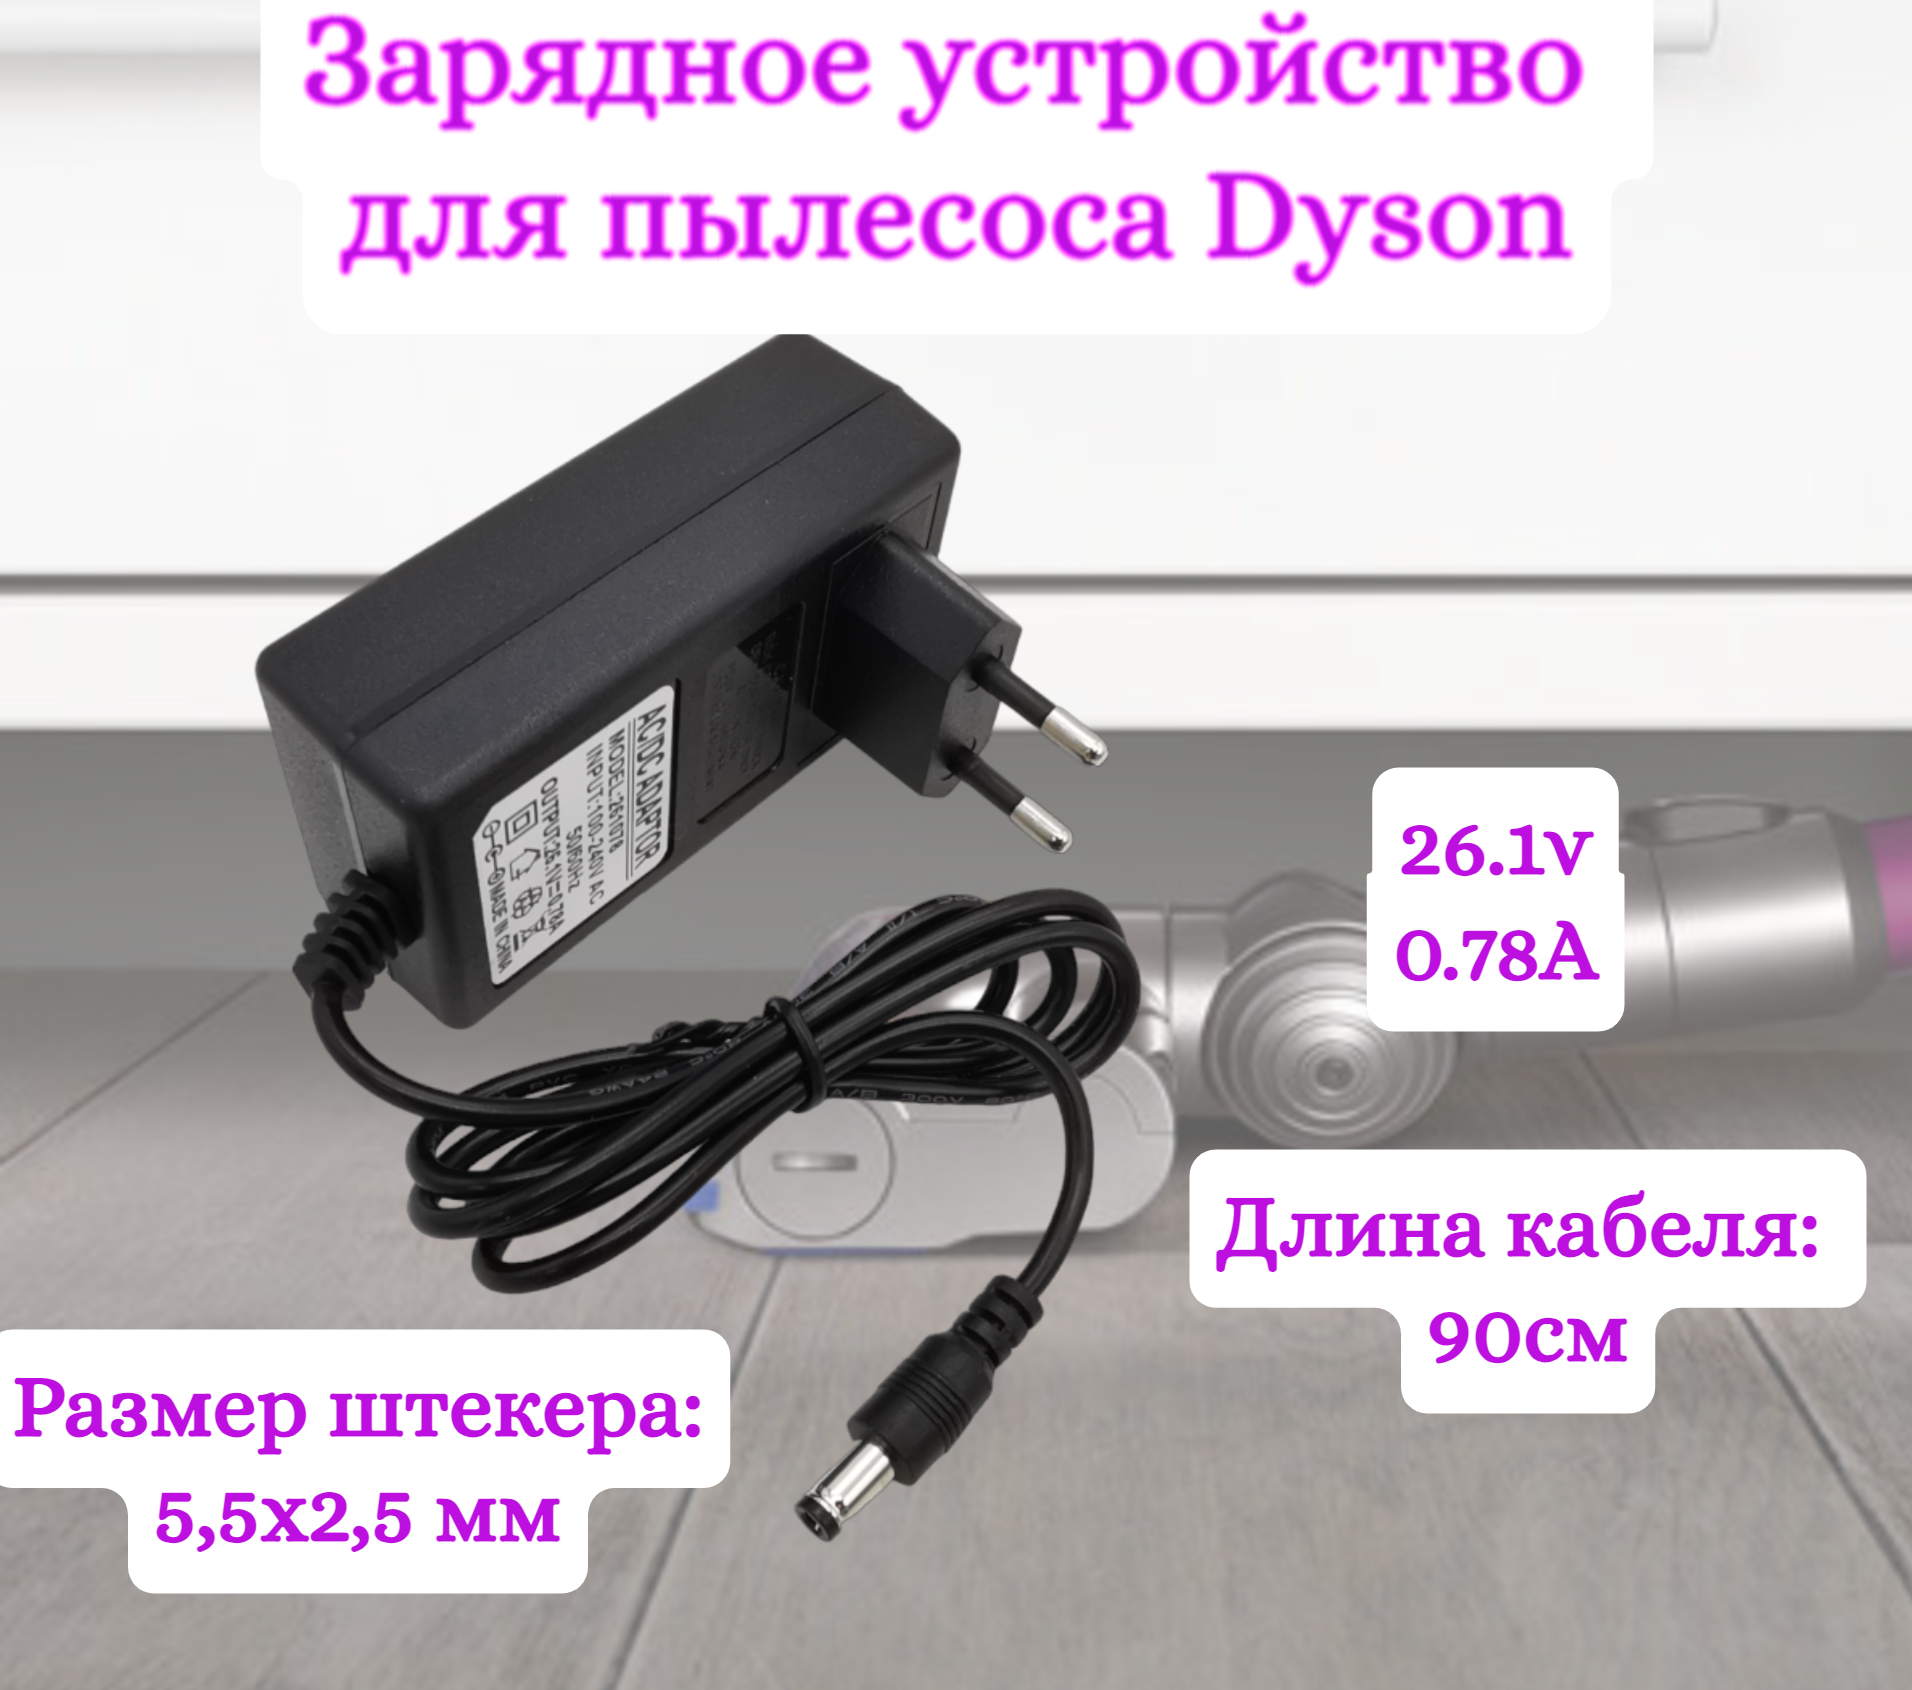 Зарядное устройство для пылесосов Helpico AC-DC 26.1v 0.78A 5.5x2.5mm зарядное устройство для пылесосов helpico ac dc 26 1v 0 78a 5 5x2 5mm